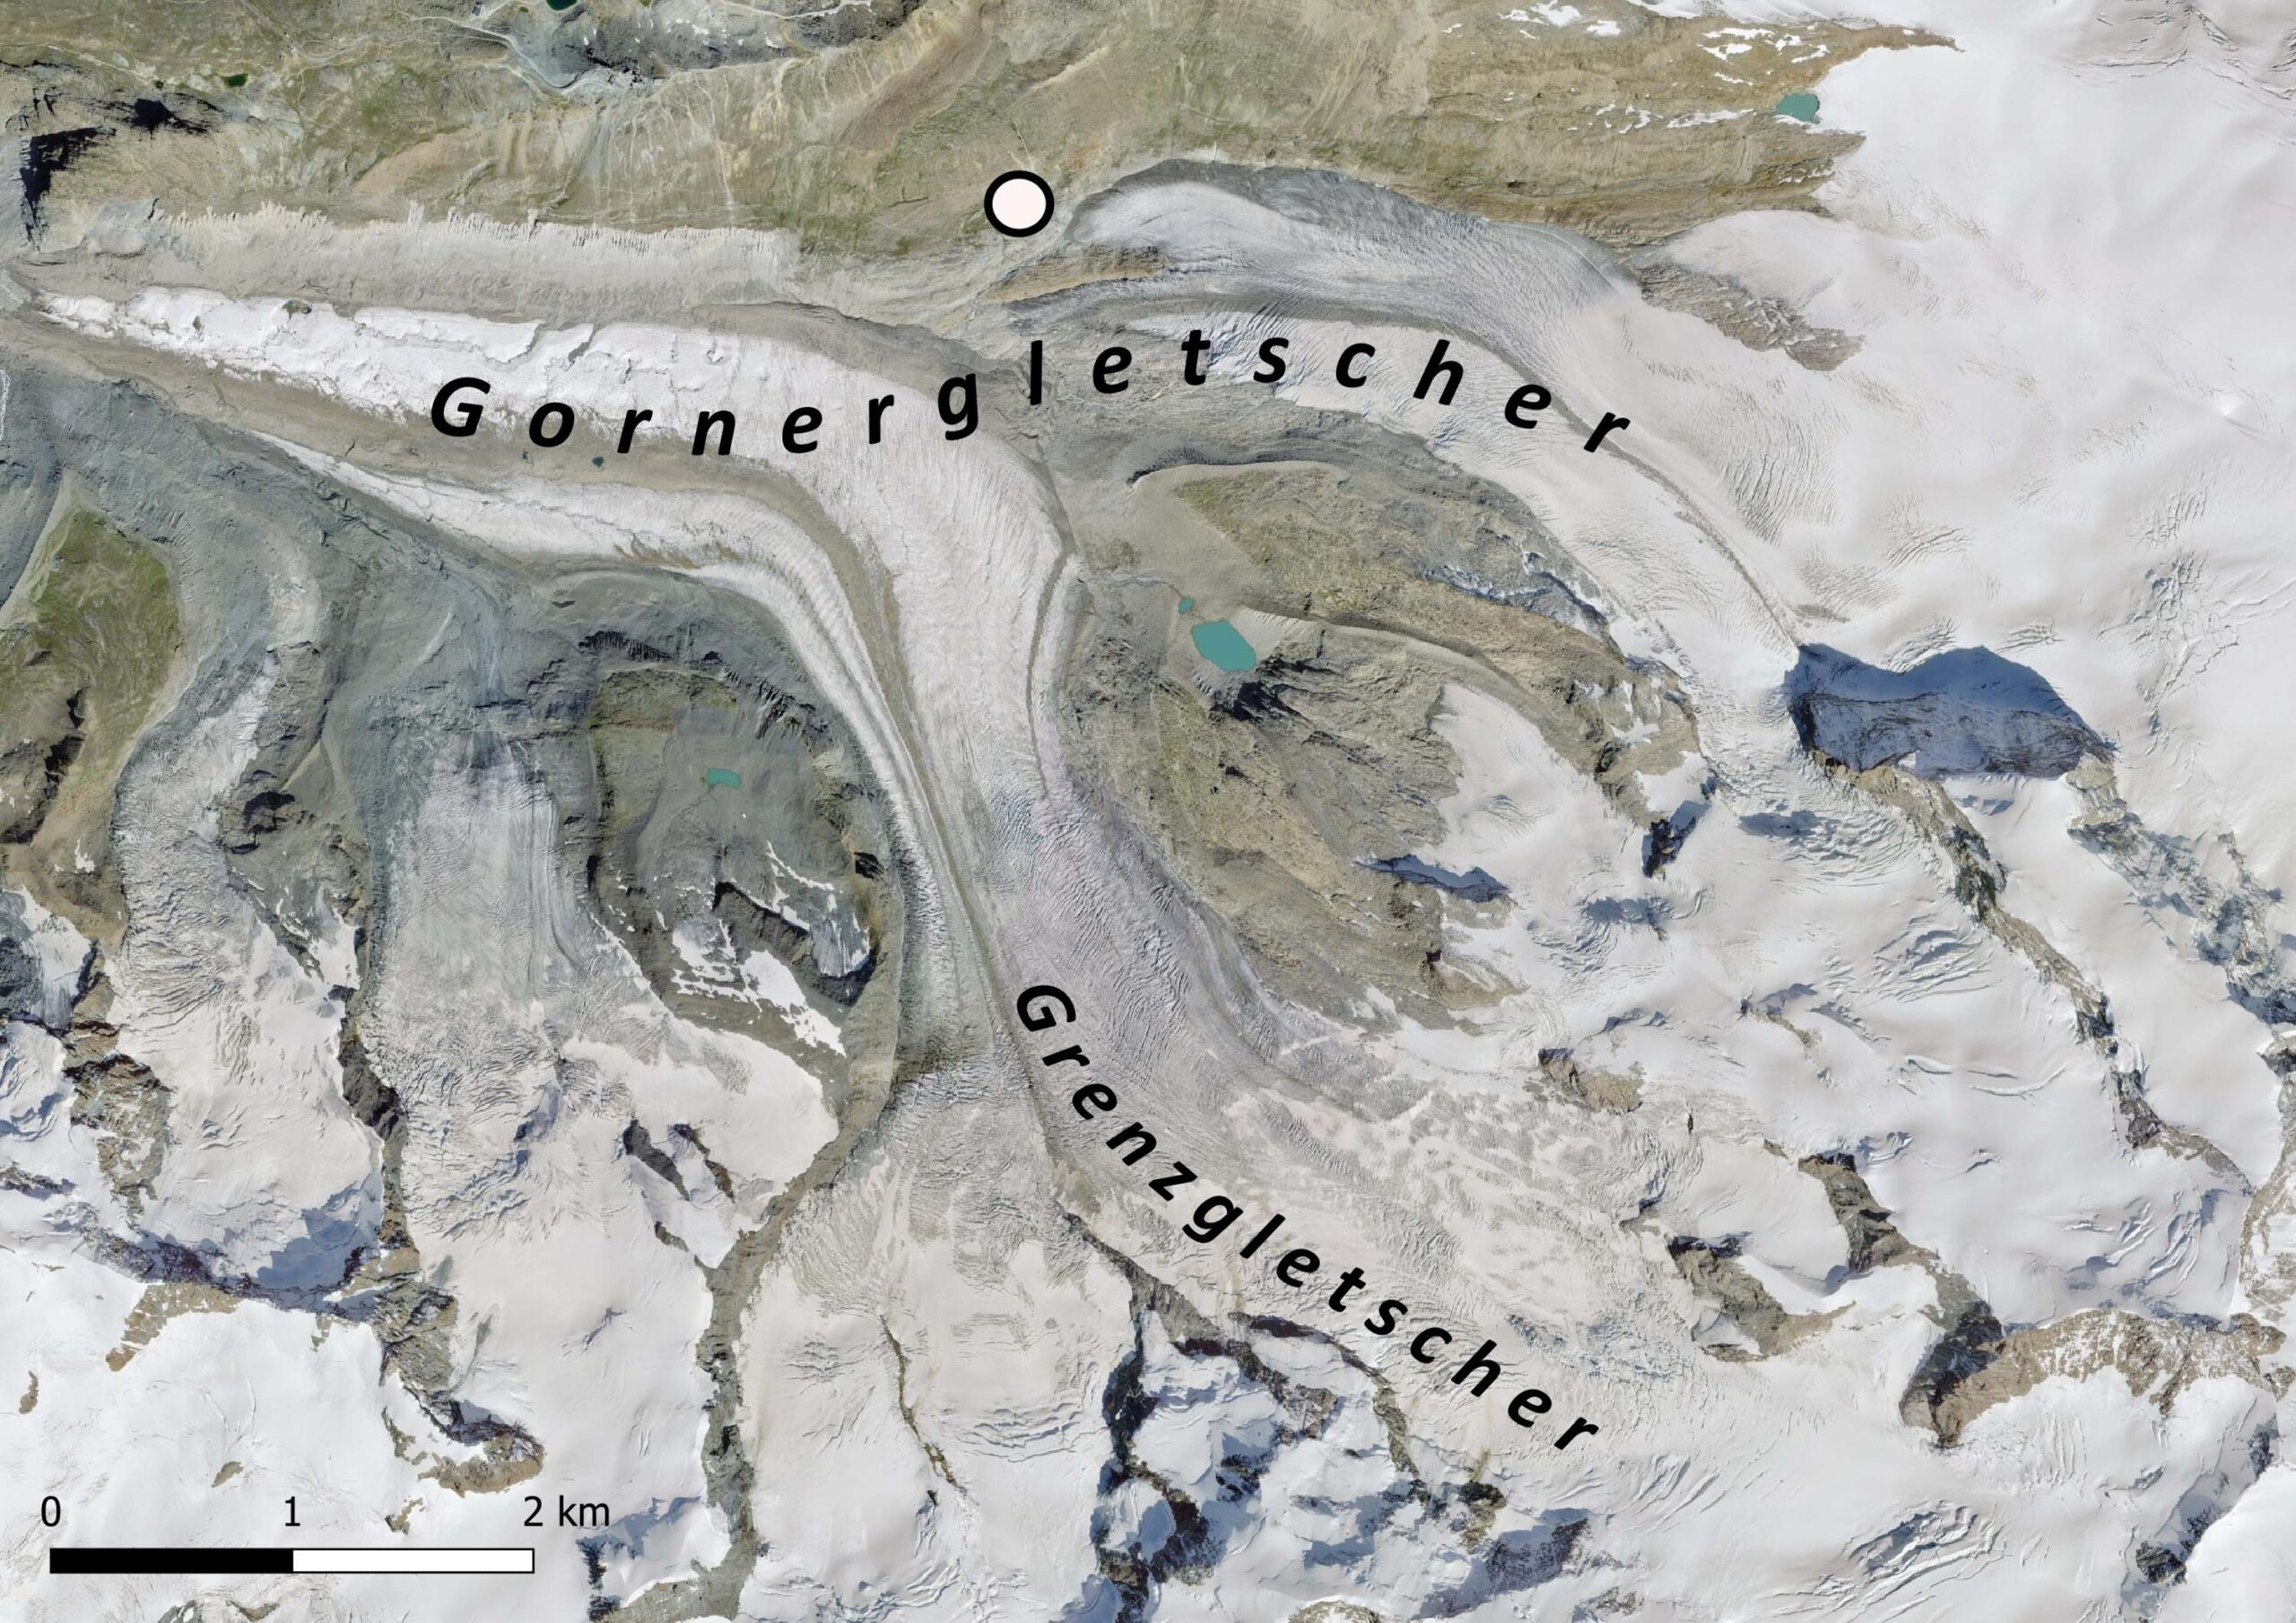 Luchtfoto van de Gorner- en Grenzgletscher. De stip mid-boven geeft de locatie van de recessiemorenes aan.